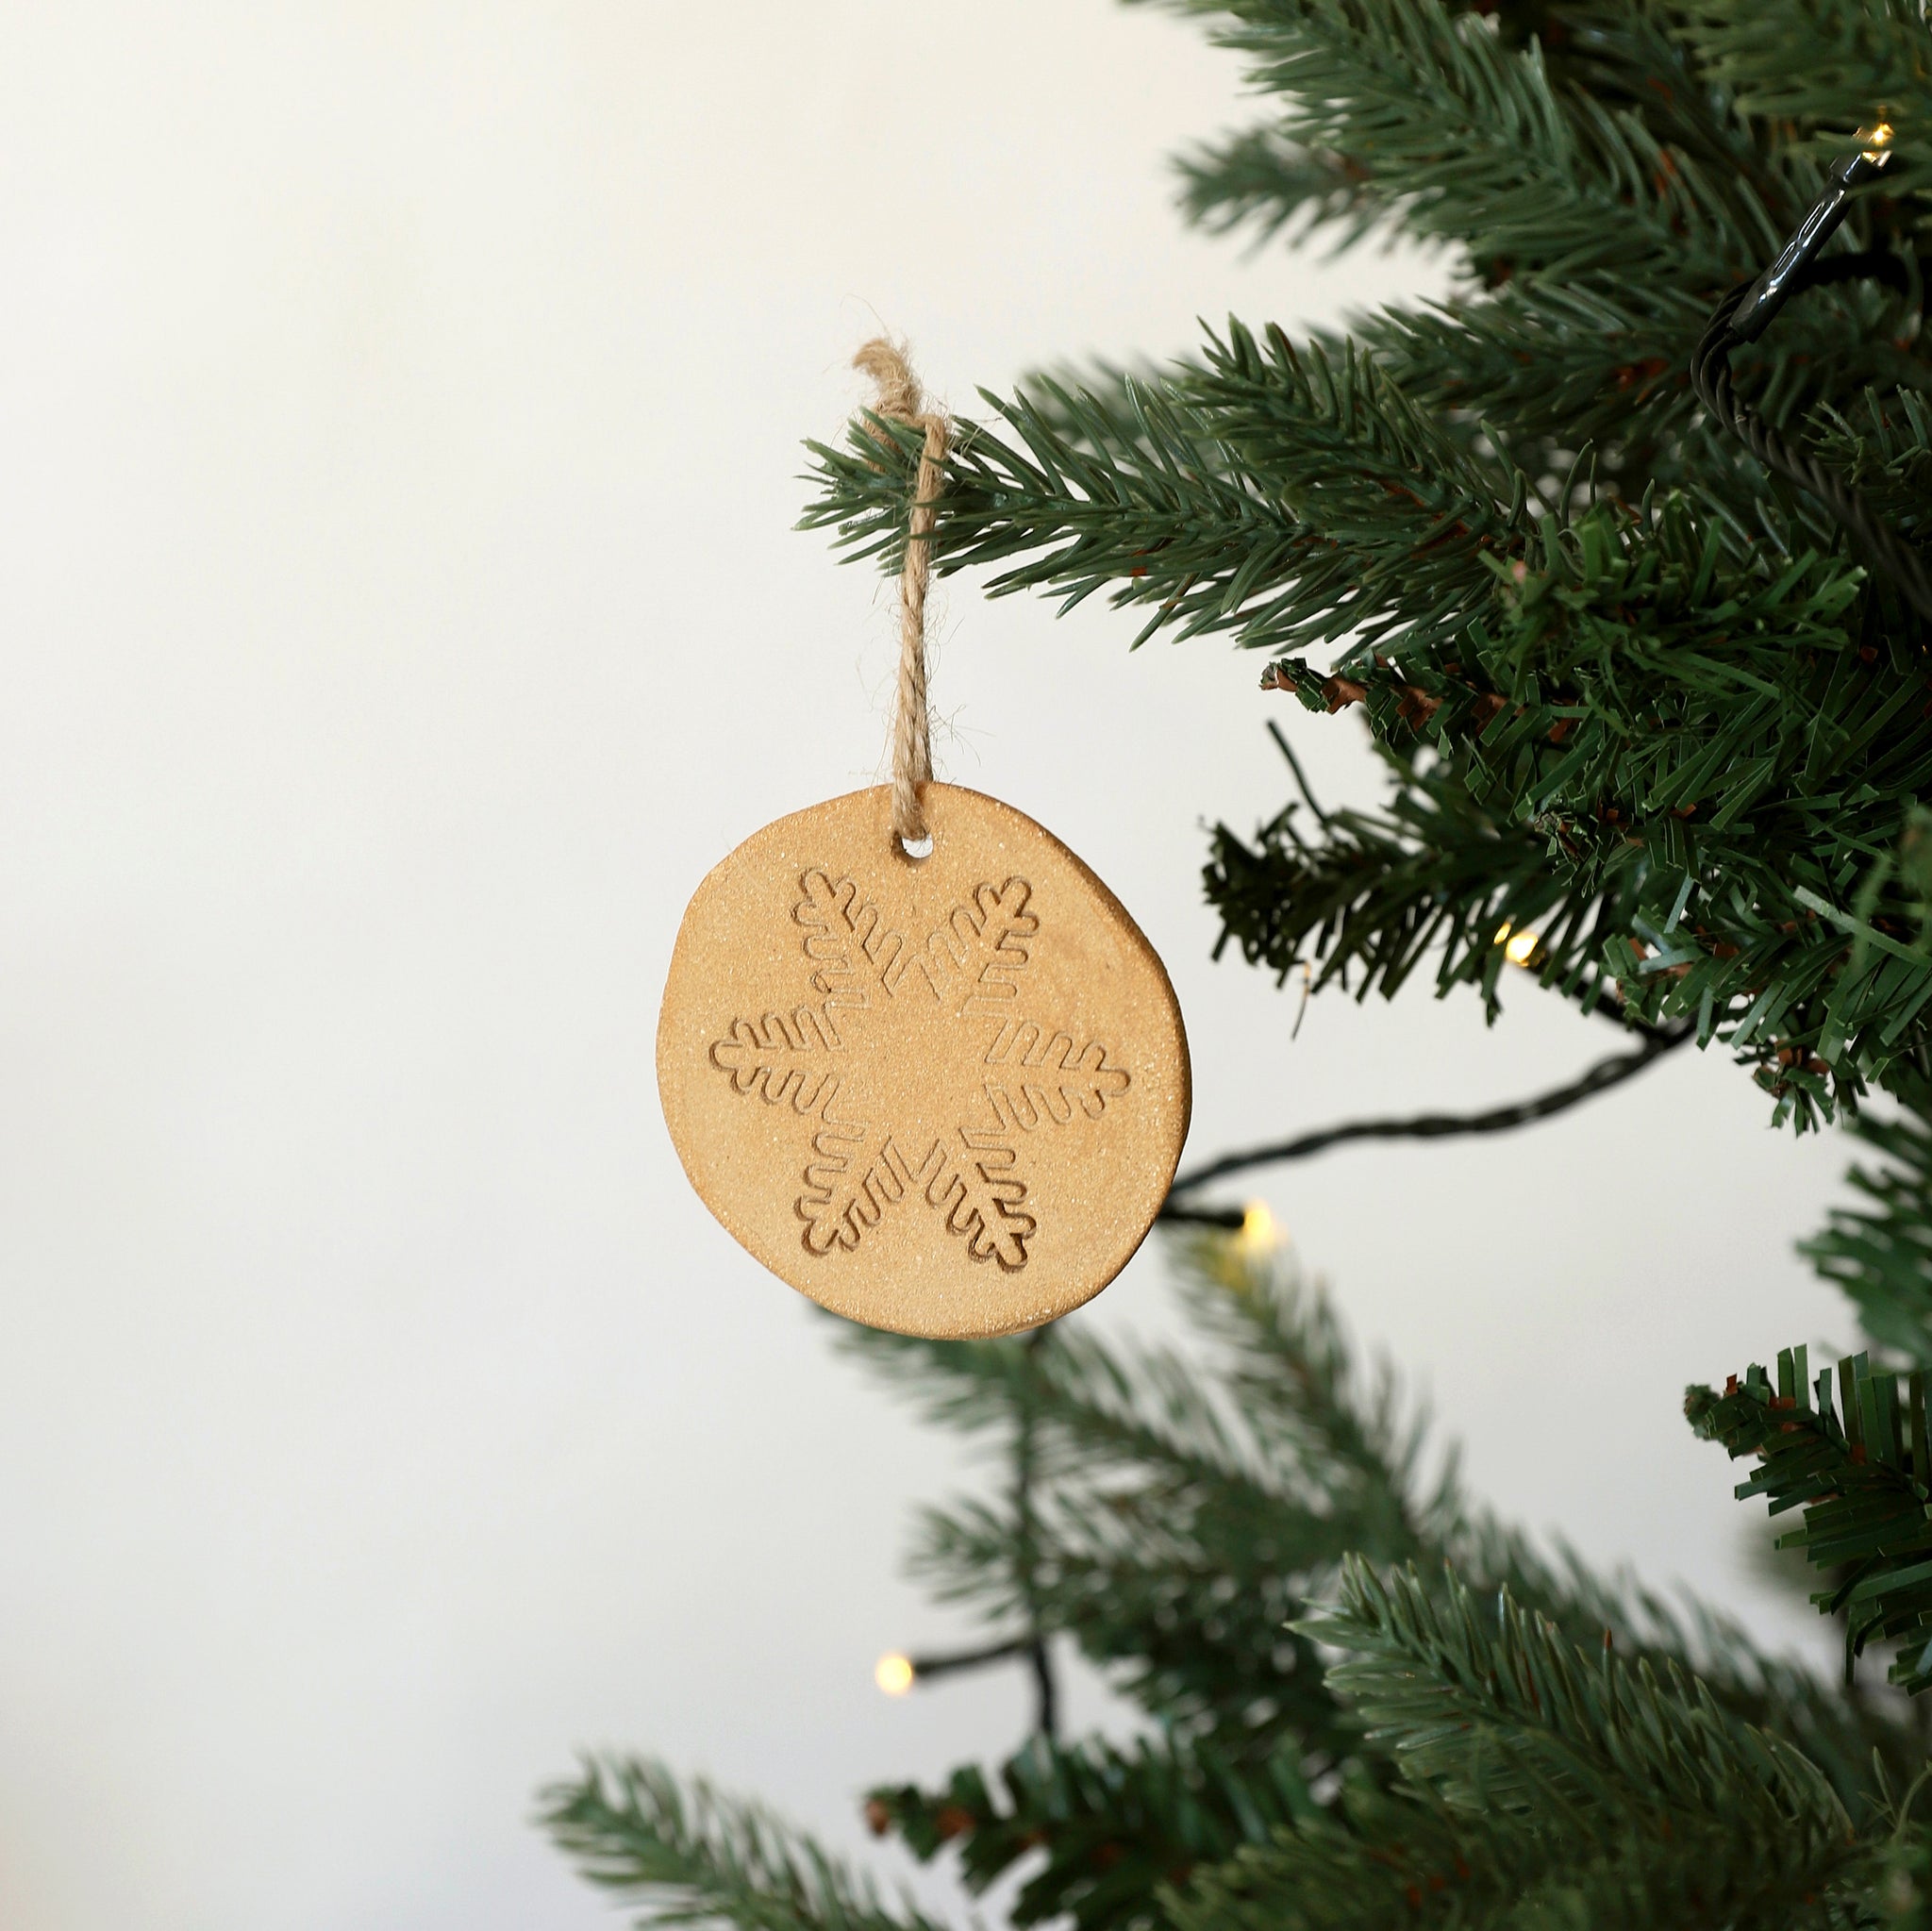 Adornos para tu árbol de Navidad, fabricados artesanalmente con cerámica